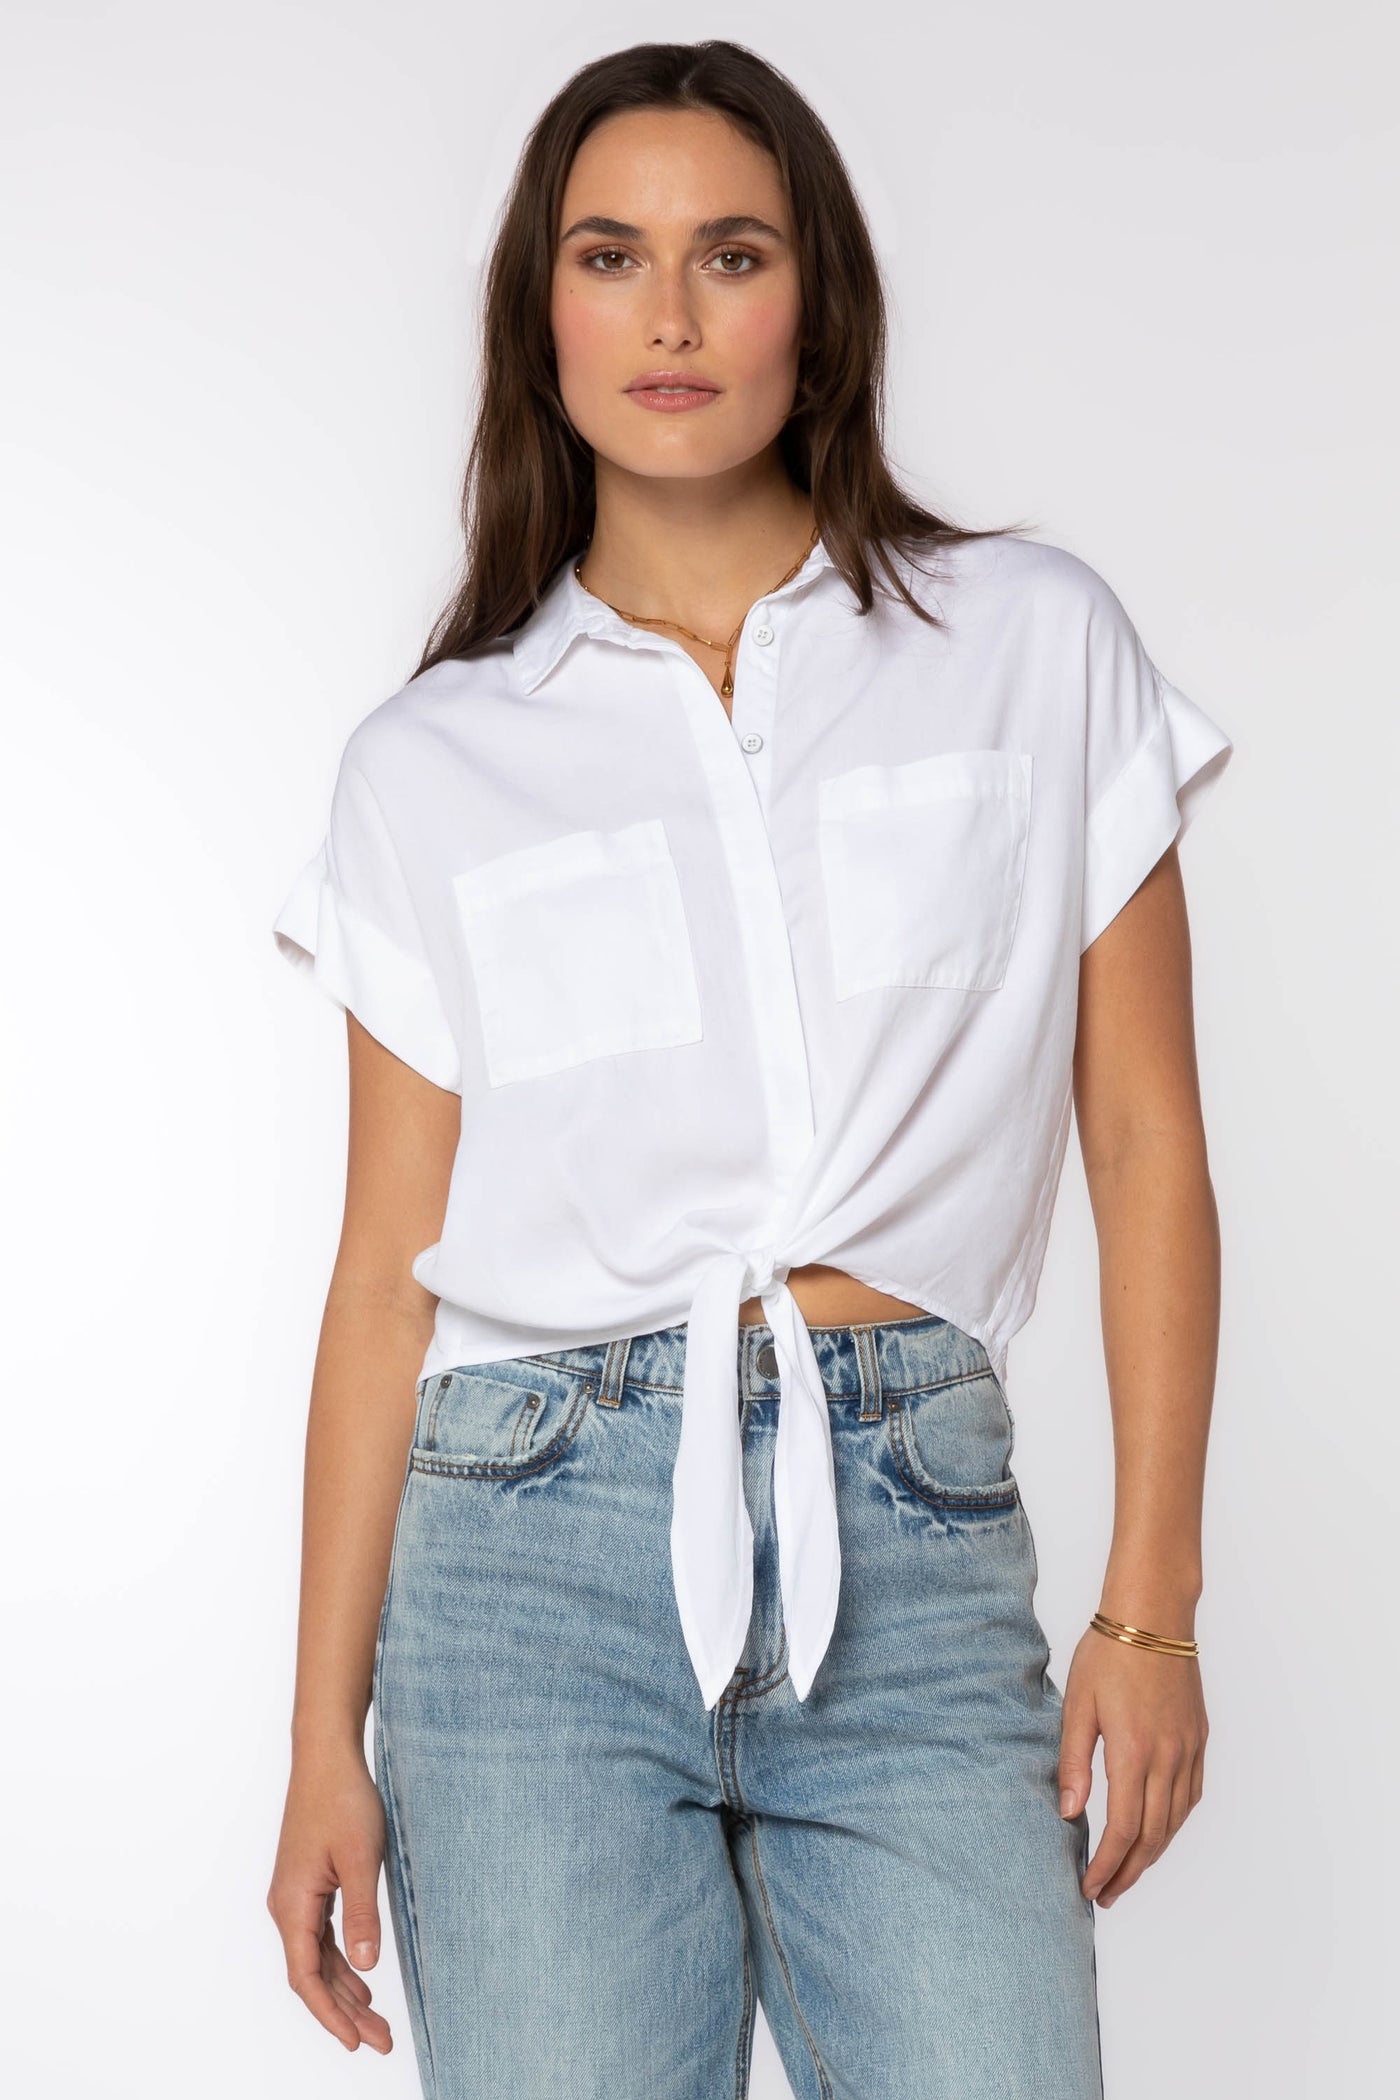 Zuria Shirt - Tops - Velvet Heart Clothing